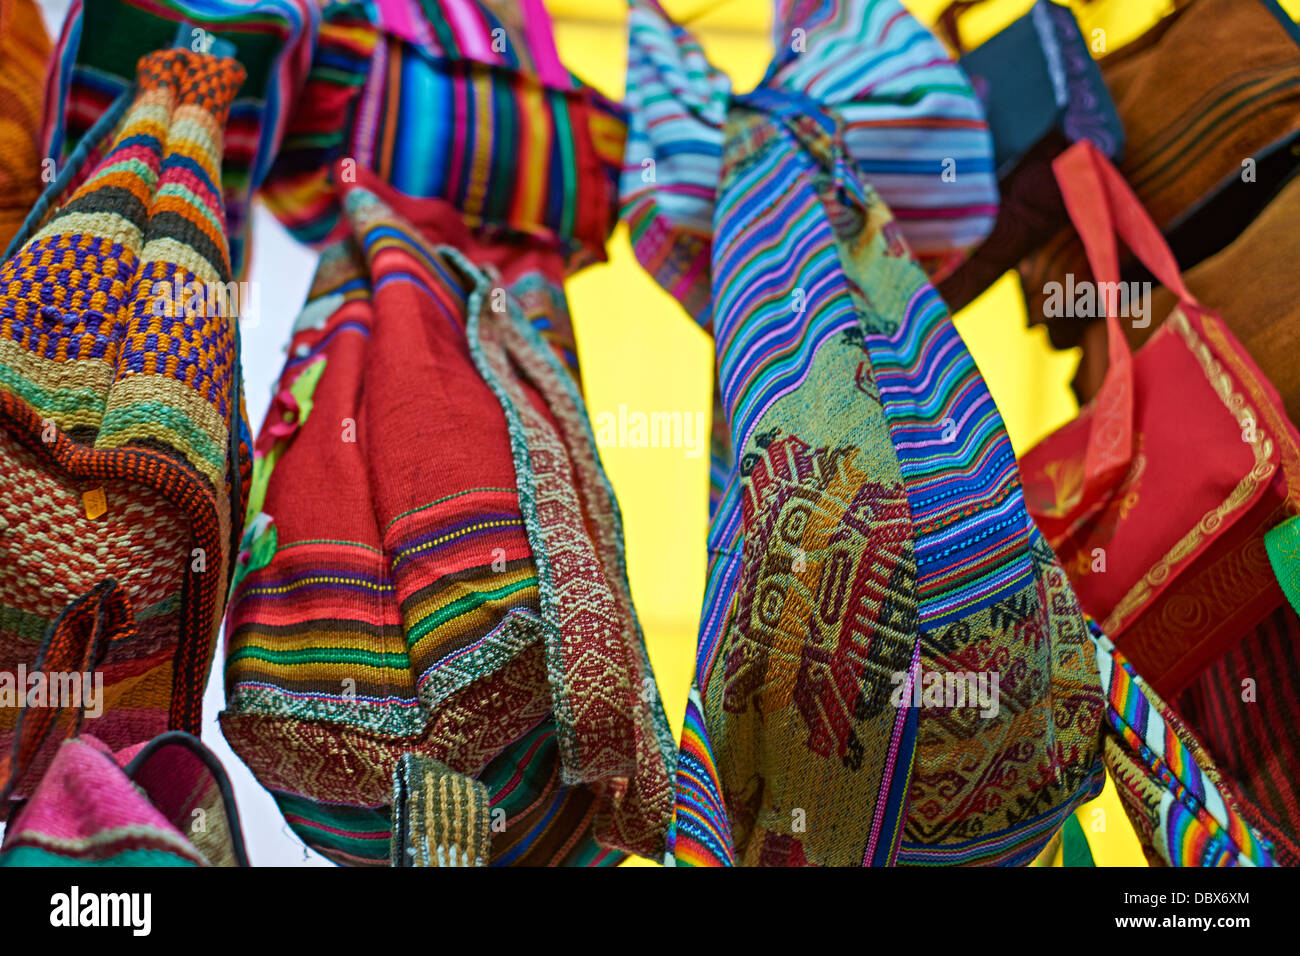 Bunten Taschen in Miraflores, Lima Peru Märkte hängen. Stockfoto